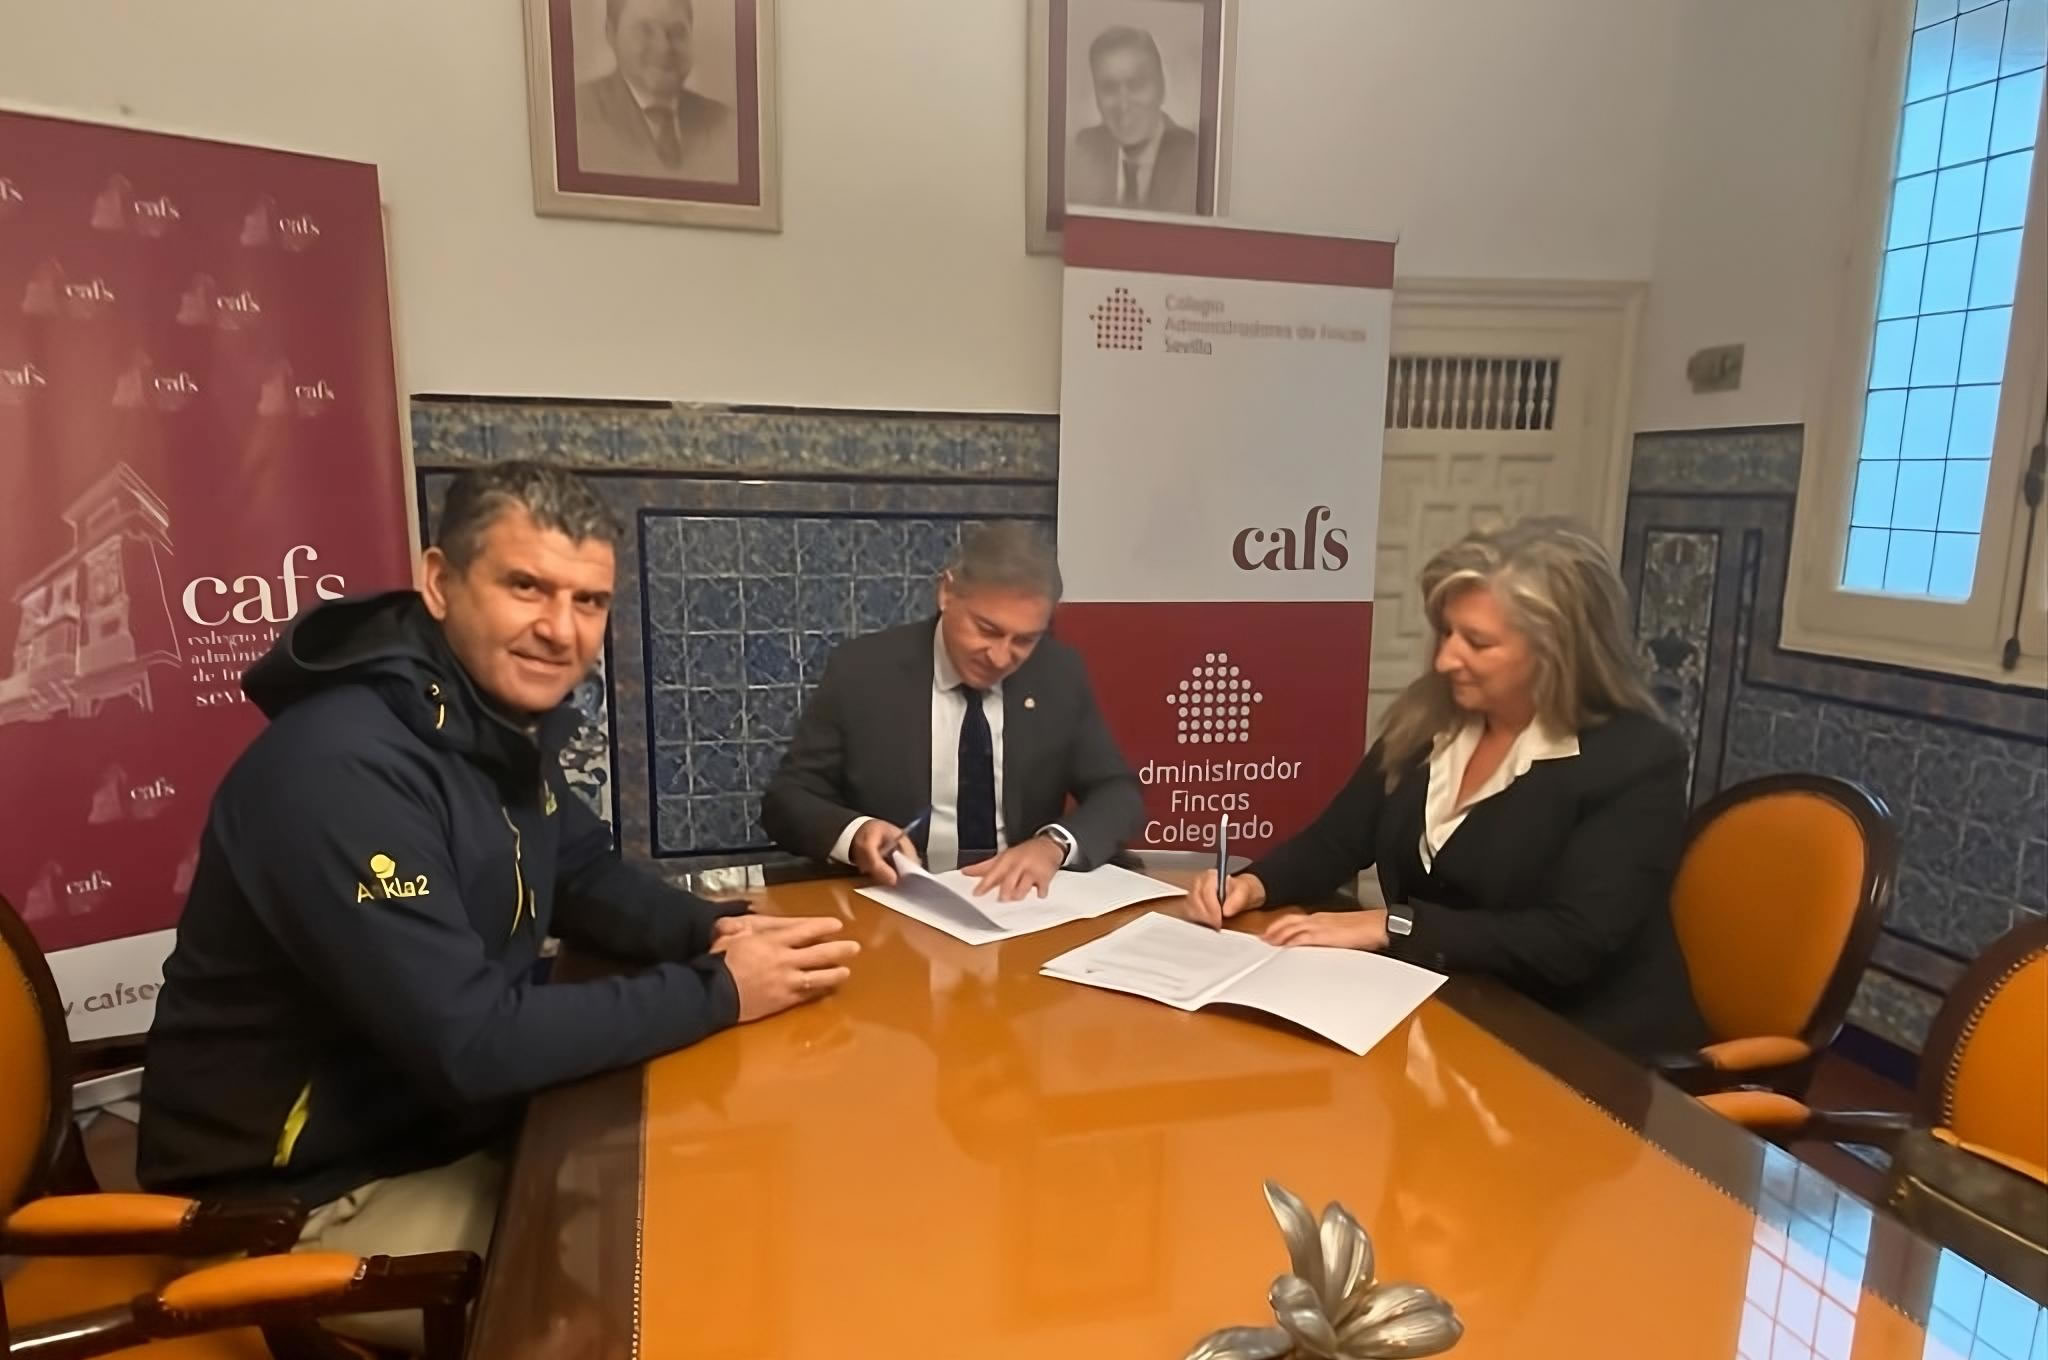 ANKLA2 firma un acuerdo con el Colegio de Administradores de Fincas de Sevilla